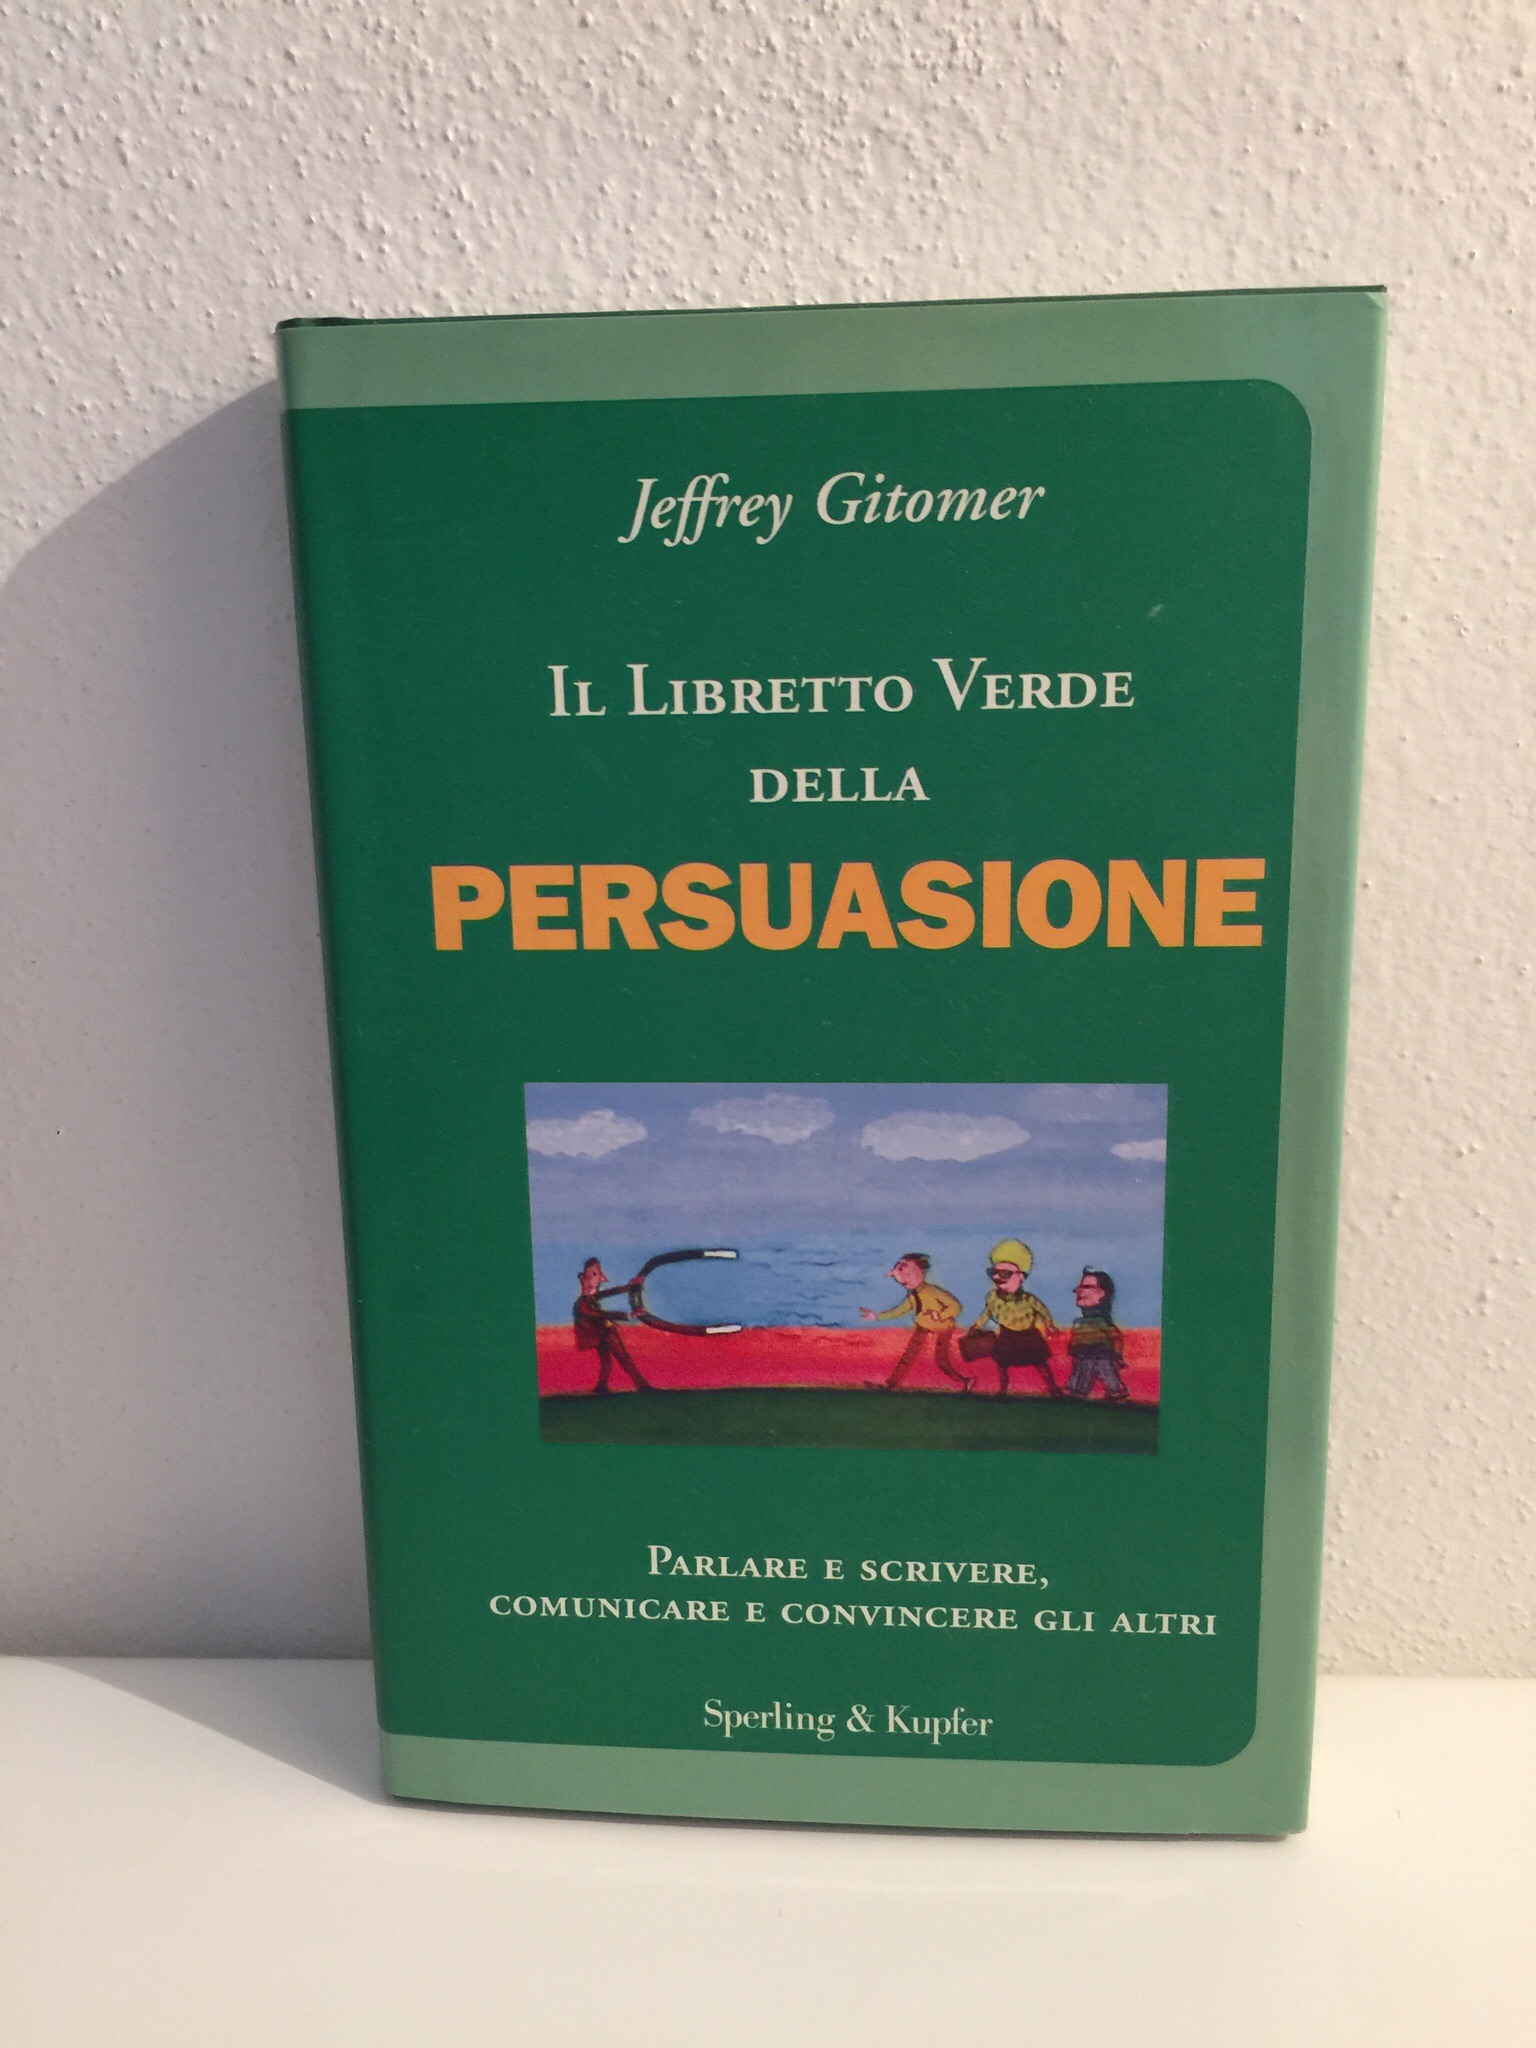 Il Libretto verde della persuasione – Jeffrey Gitomer